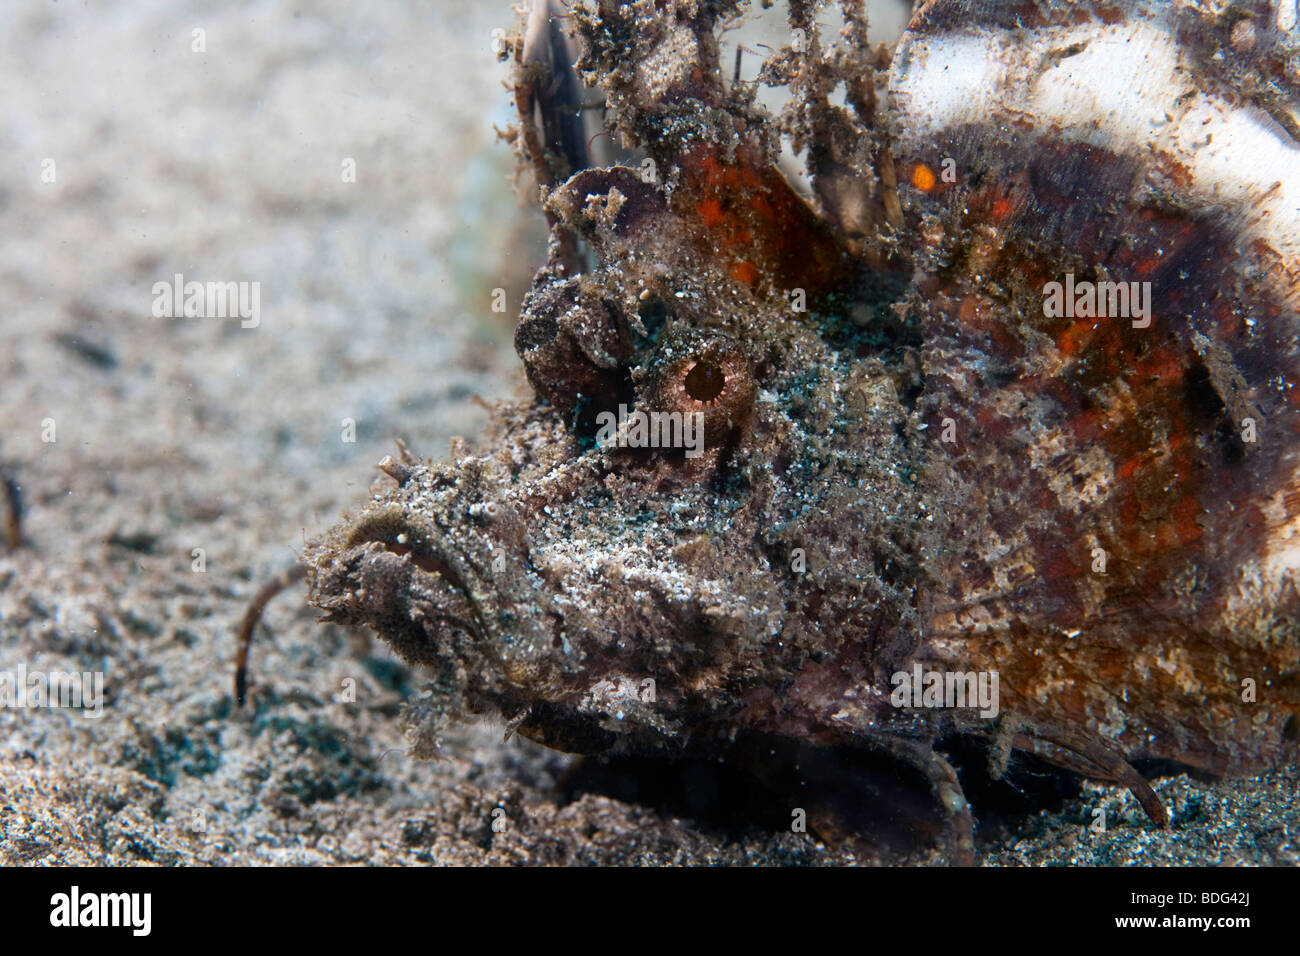 Devil scorpionfish (Inimicus didactylus), Sulawesi, Indonésie, Asie du sud-est Banque D'Images